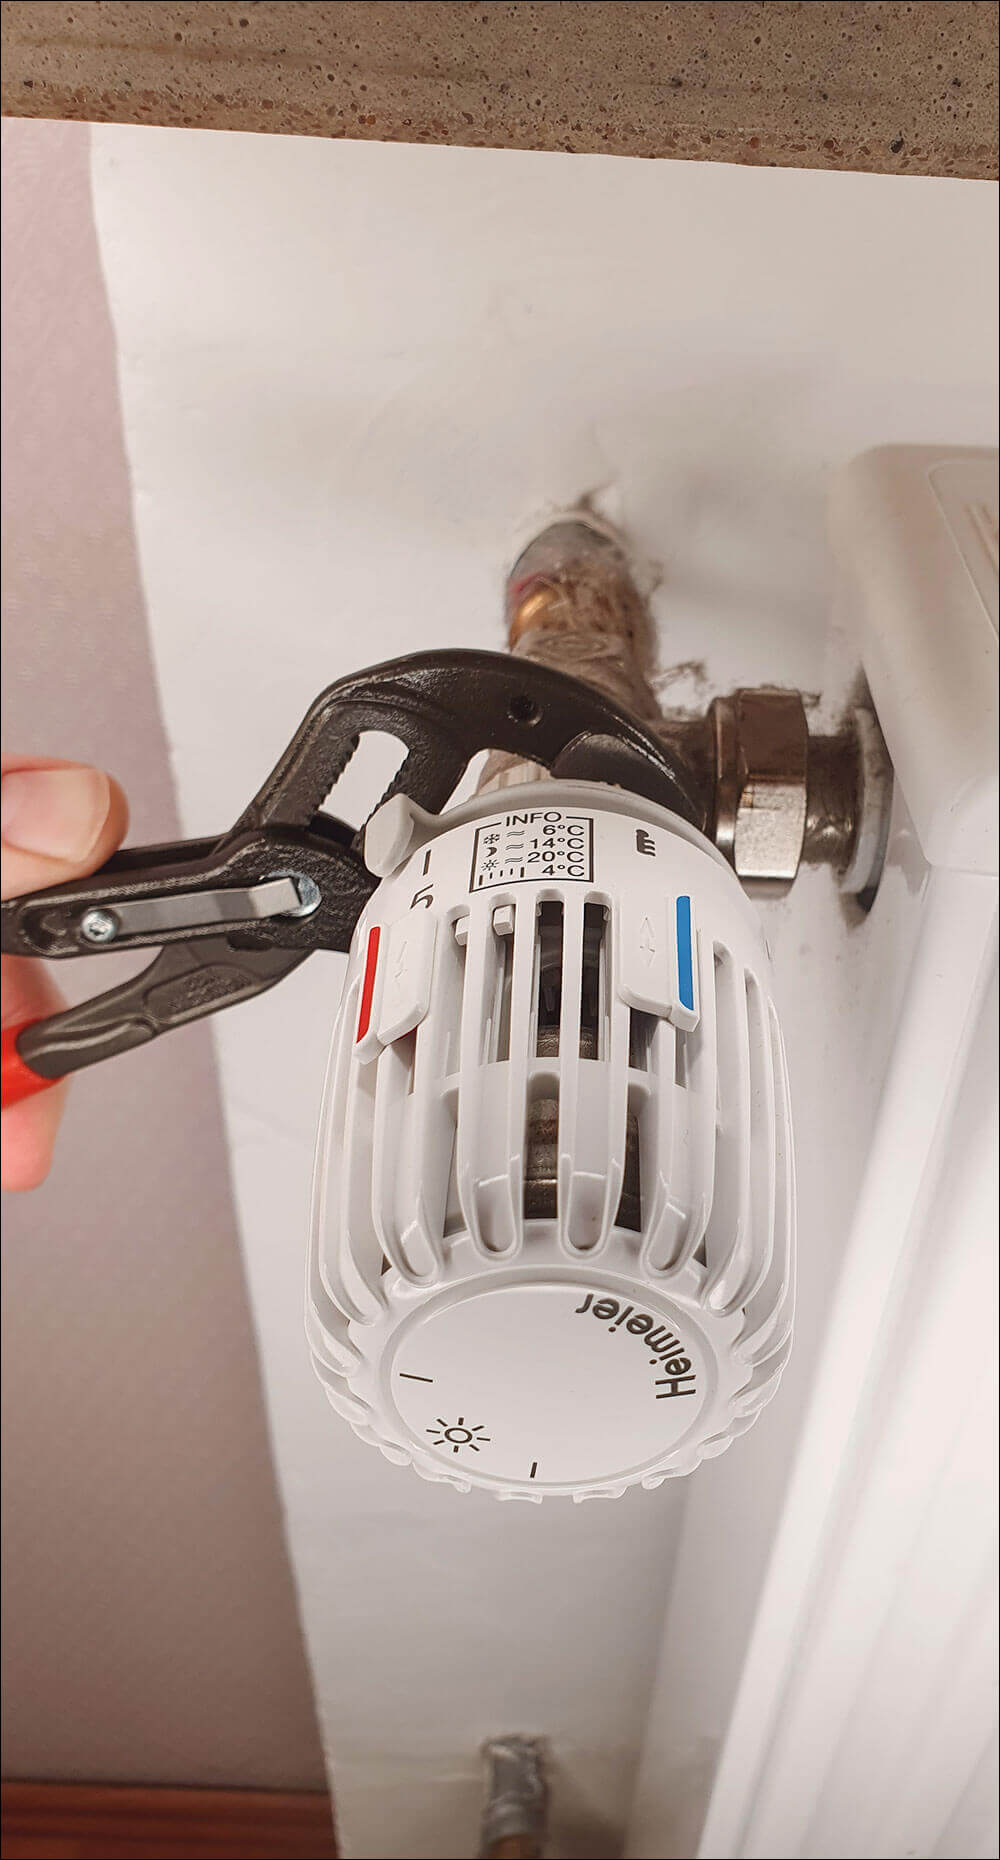 Bild 7: Drehen Sie den alten Thermostat auf die höchste Stufen und demontieren Sie diesen. Keine Sorge: Es kann kein Wasser austreten!